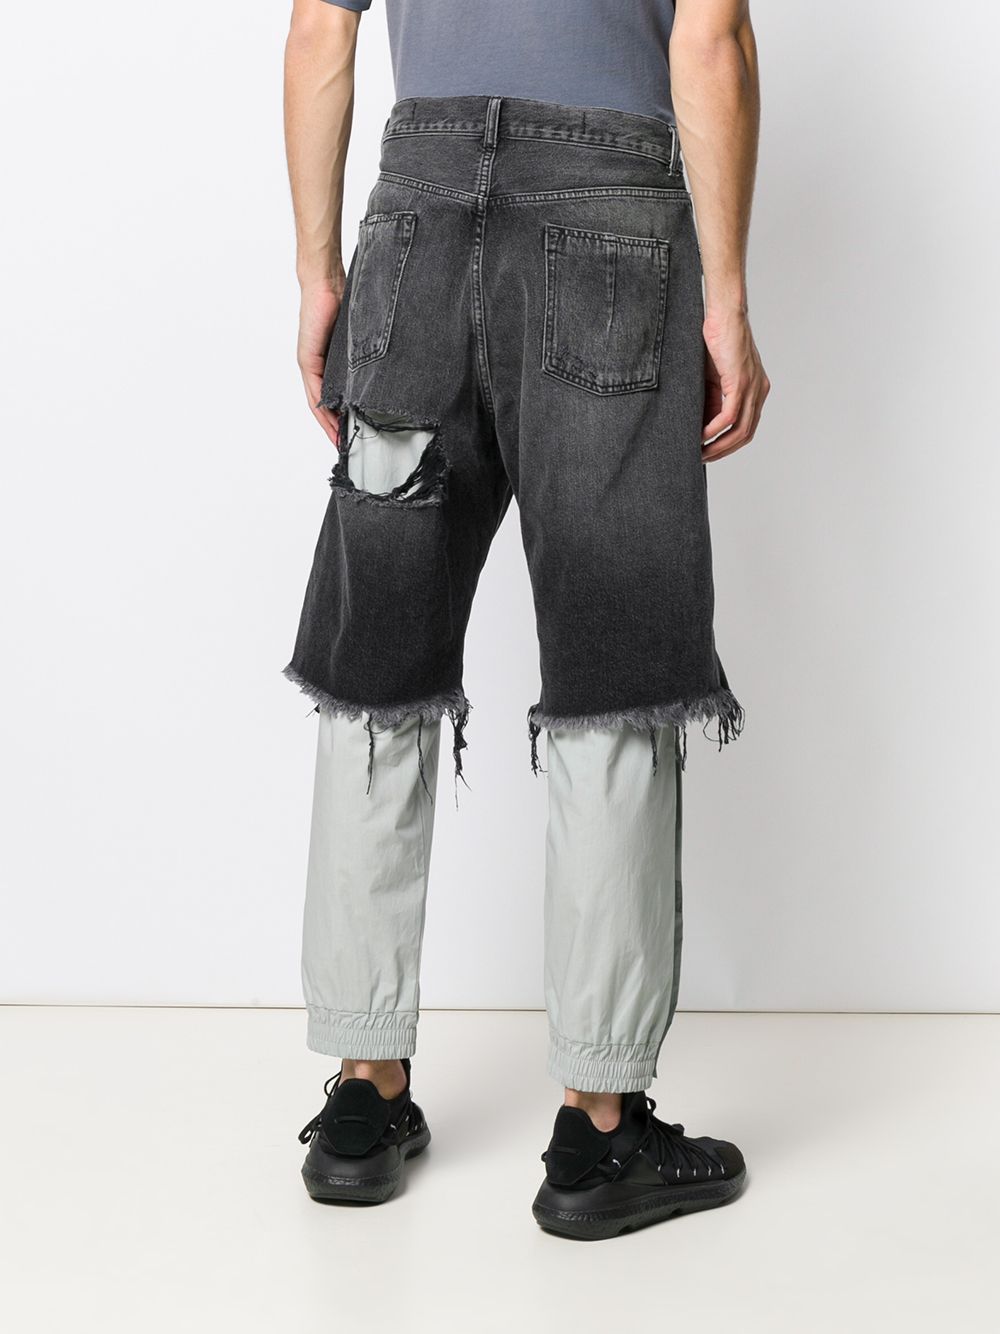 фото Unravel project джинсы с эффектом потертости и прорезями